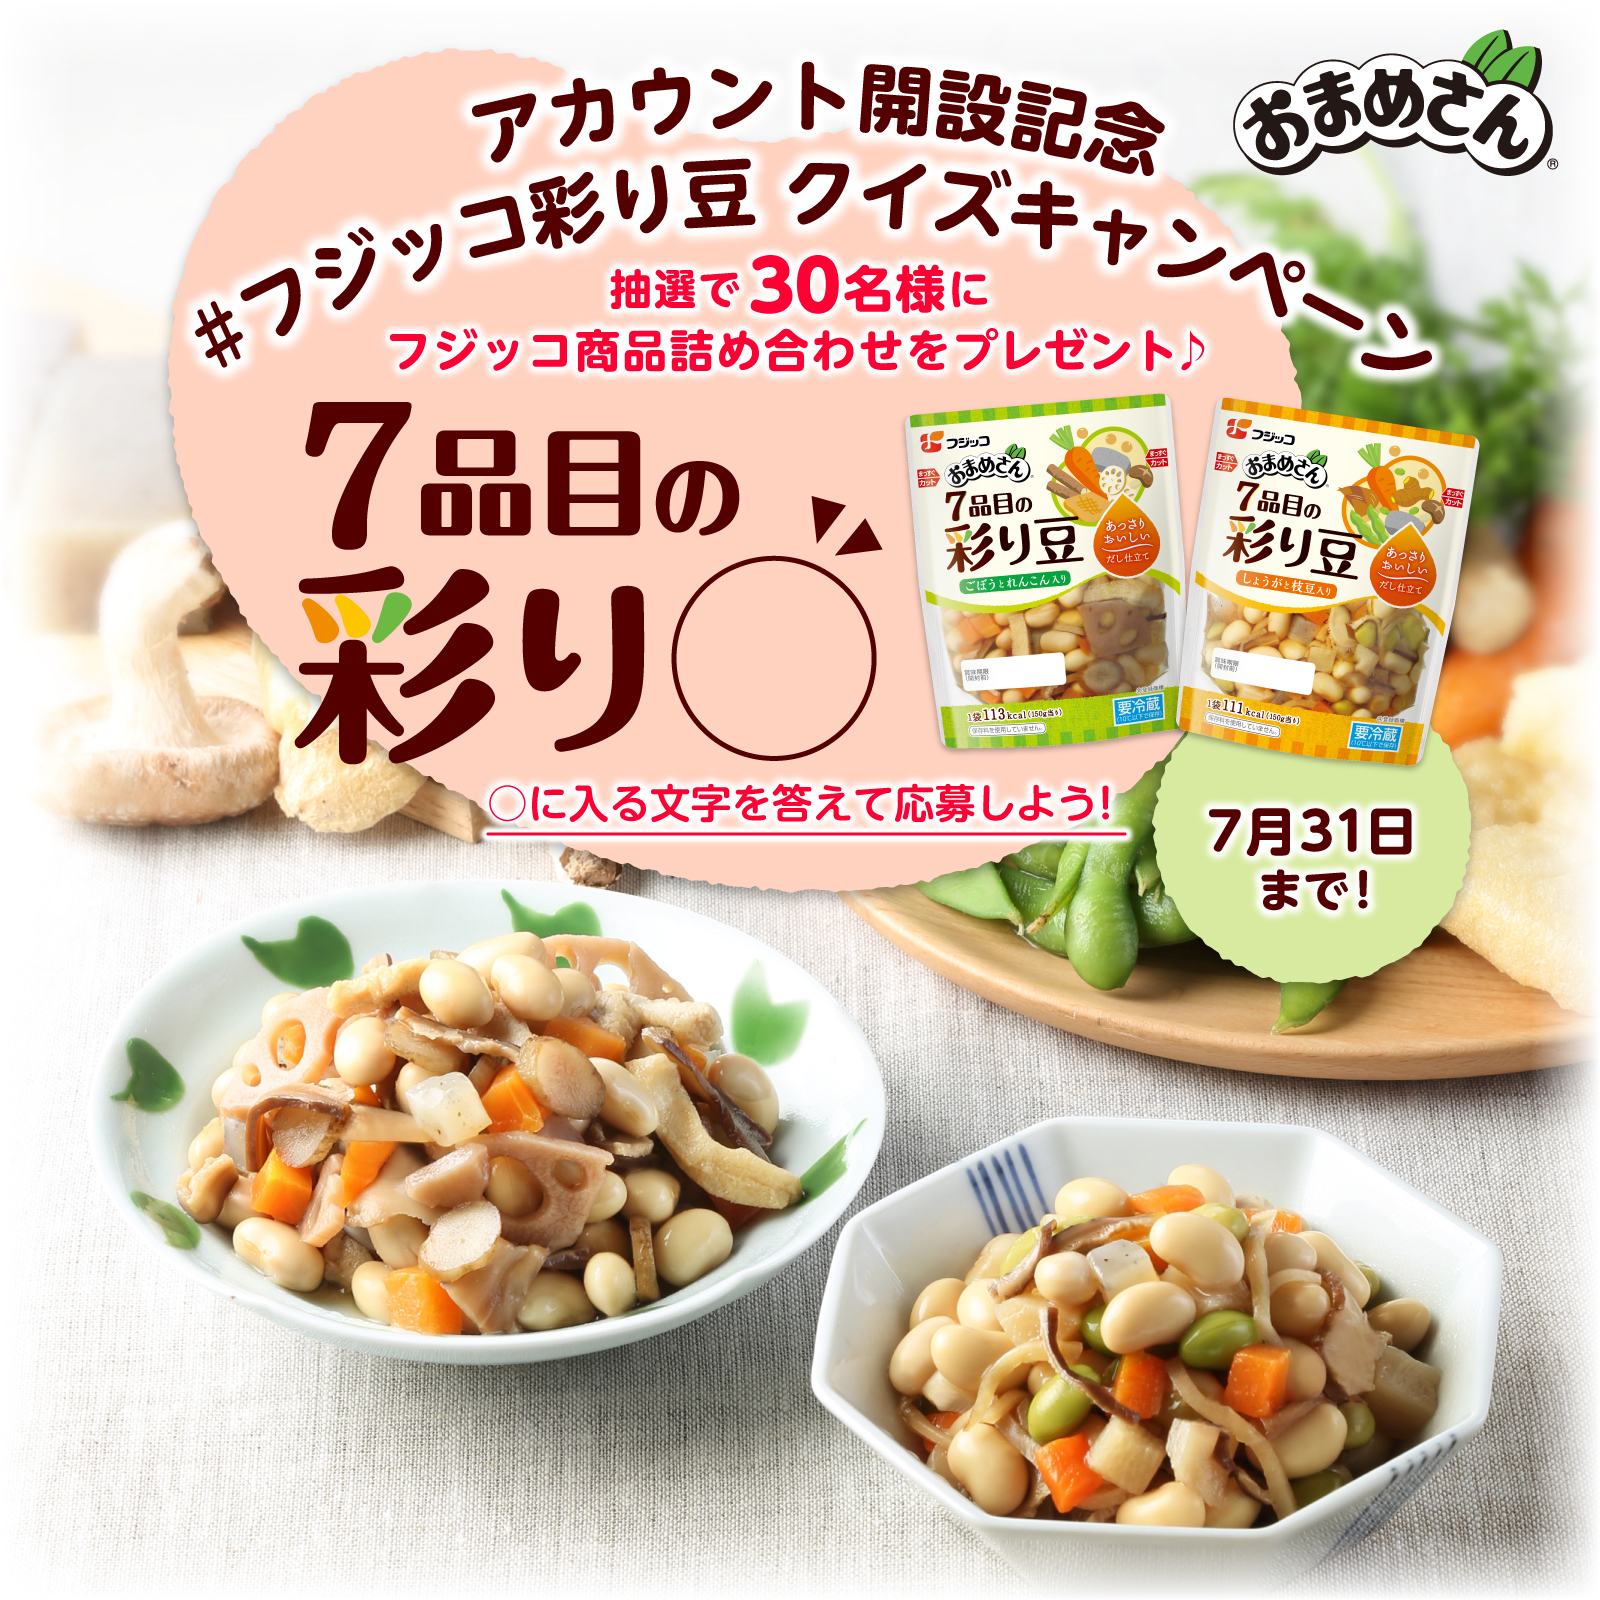 アカウント開設記念#フジッコ彩り豆 クイズキャンペーン